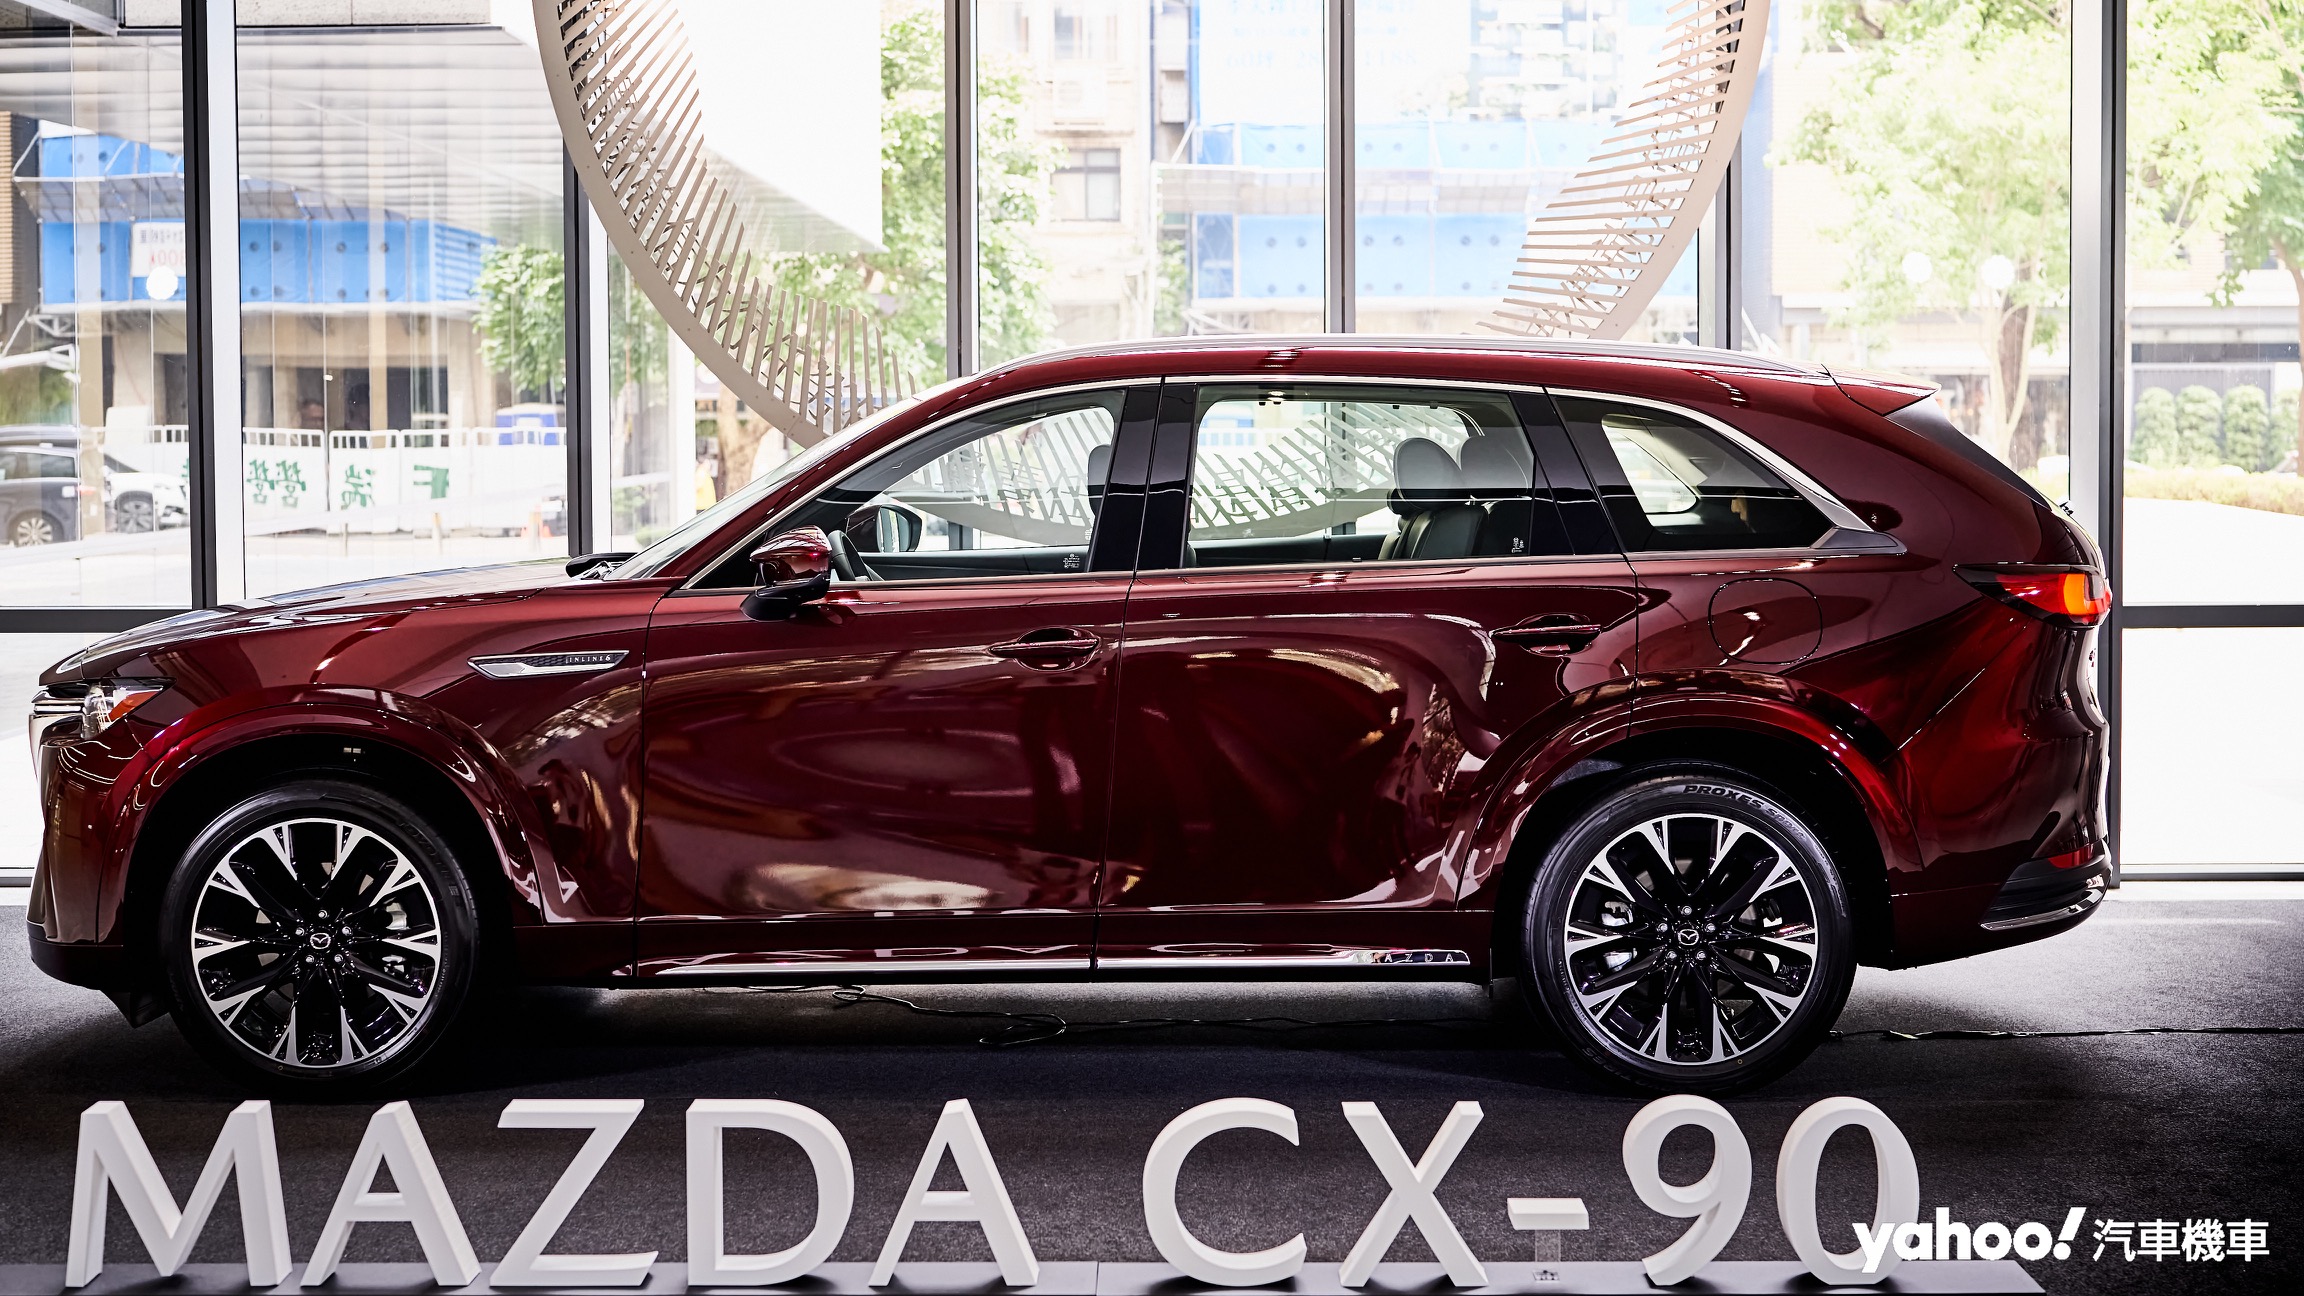 具備5米1車長的Mazda全新CX-90在側邊有著相當優異的視覺比例而更顯纖細俐落。